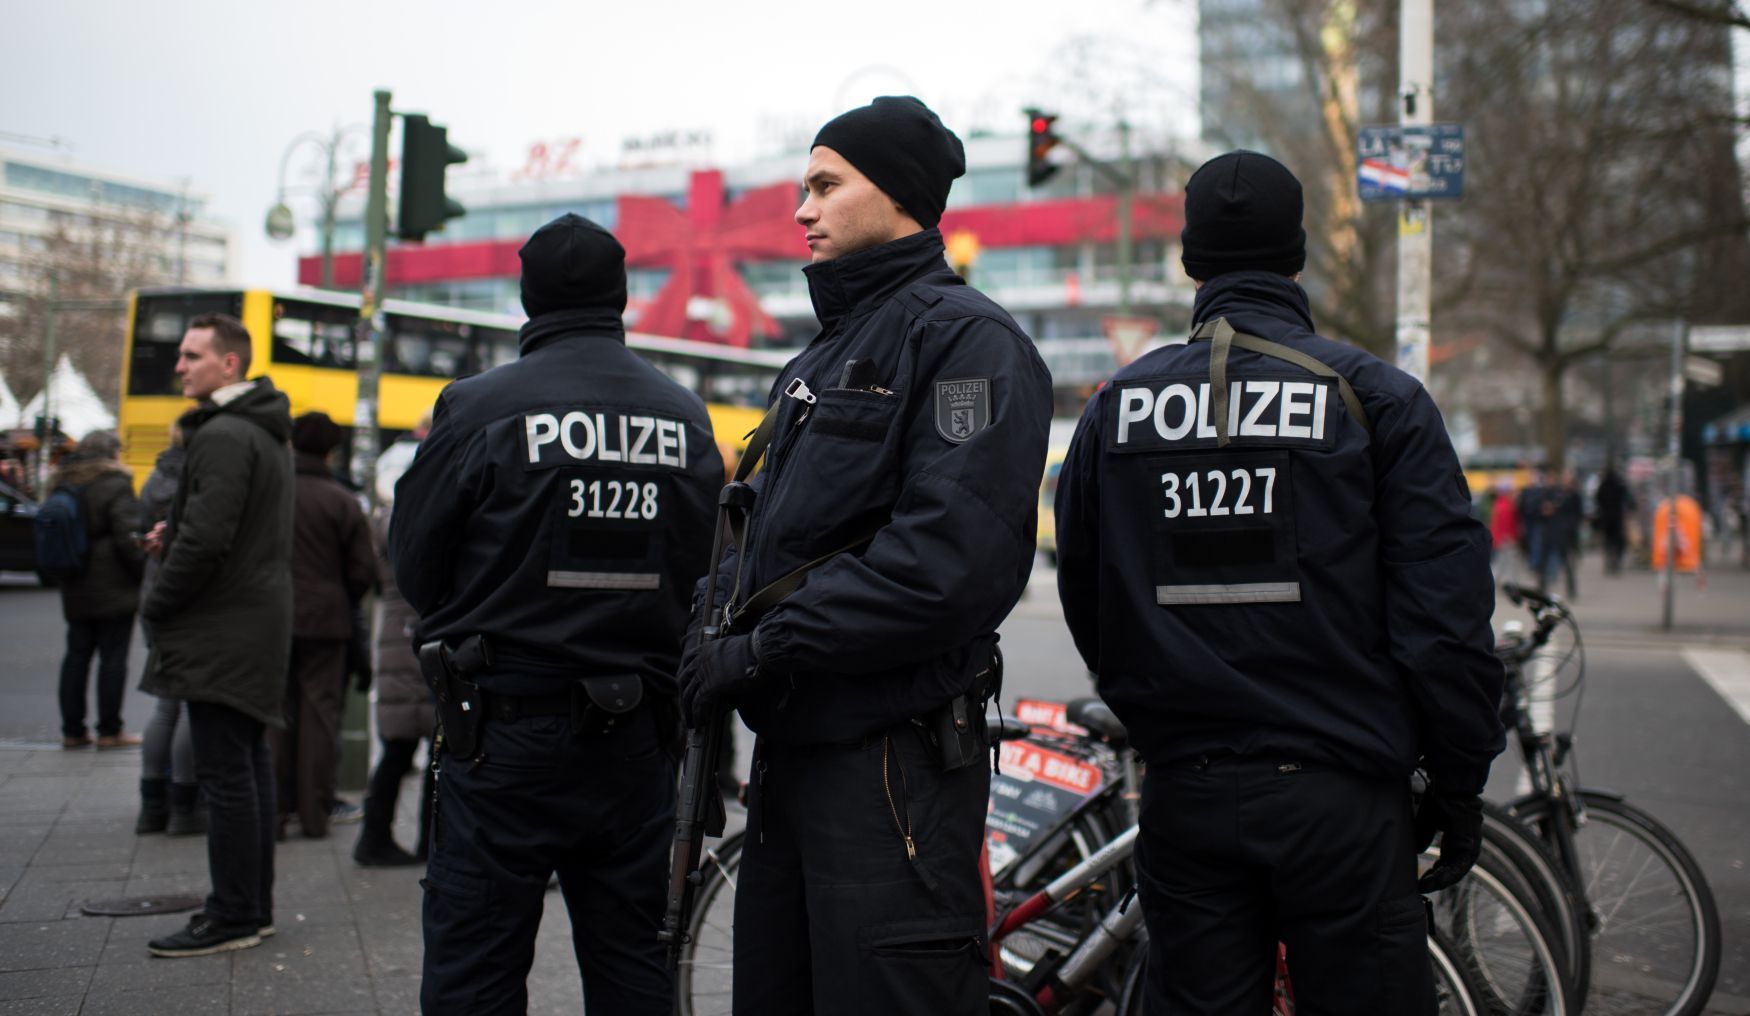 Policie u berlínských vánočních trhů.